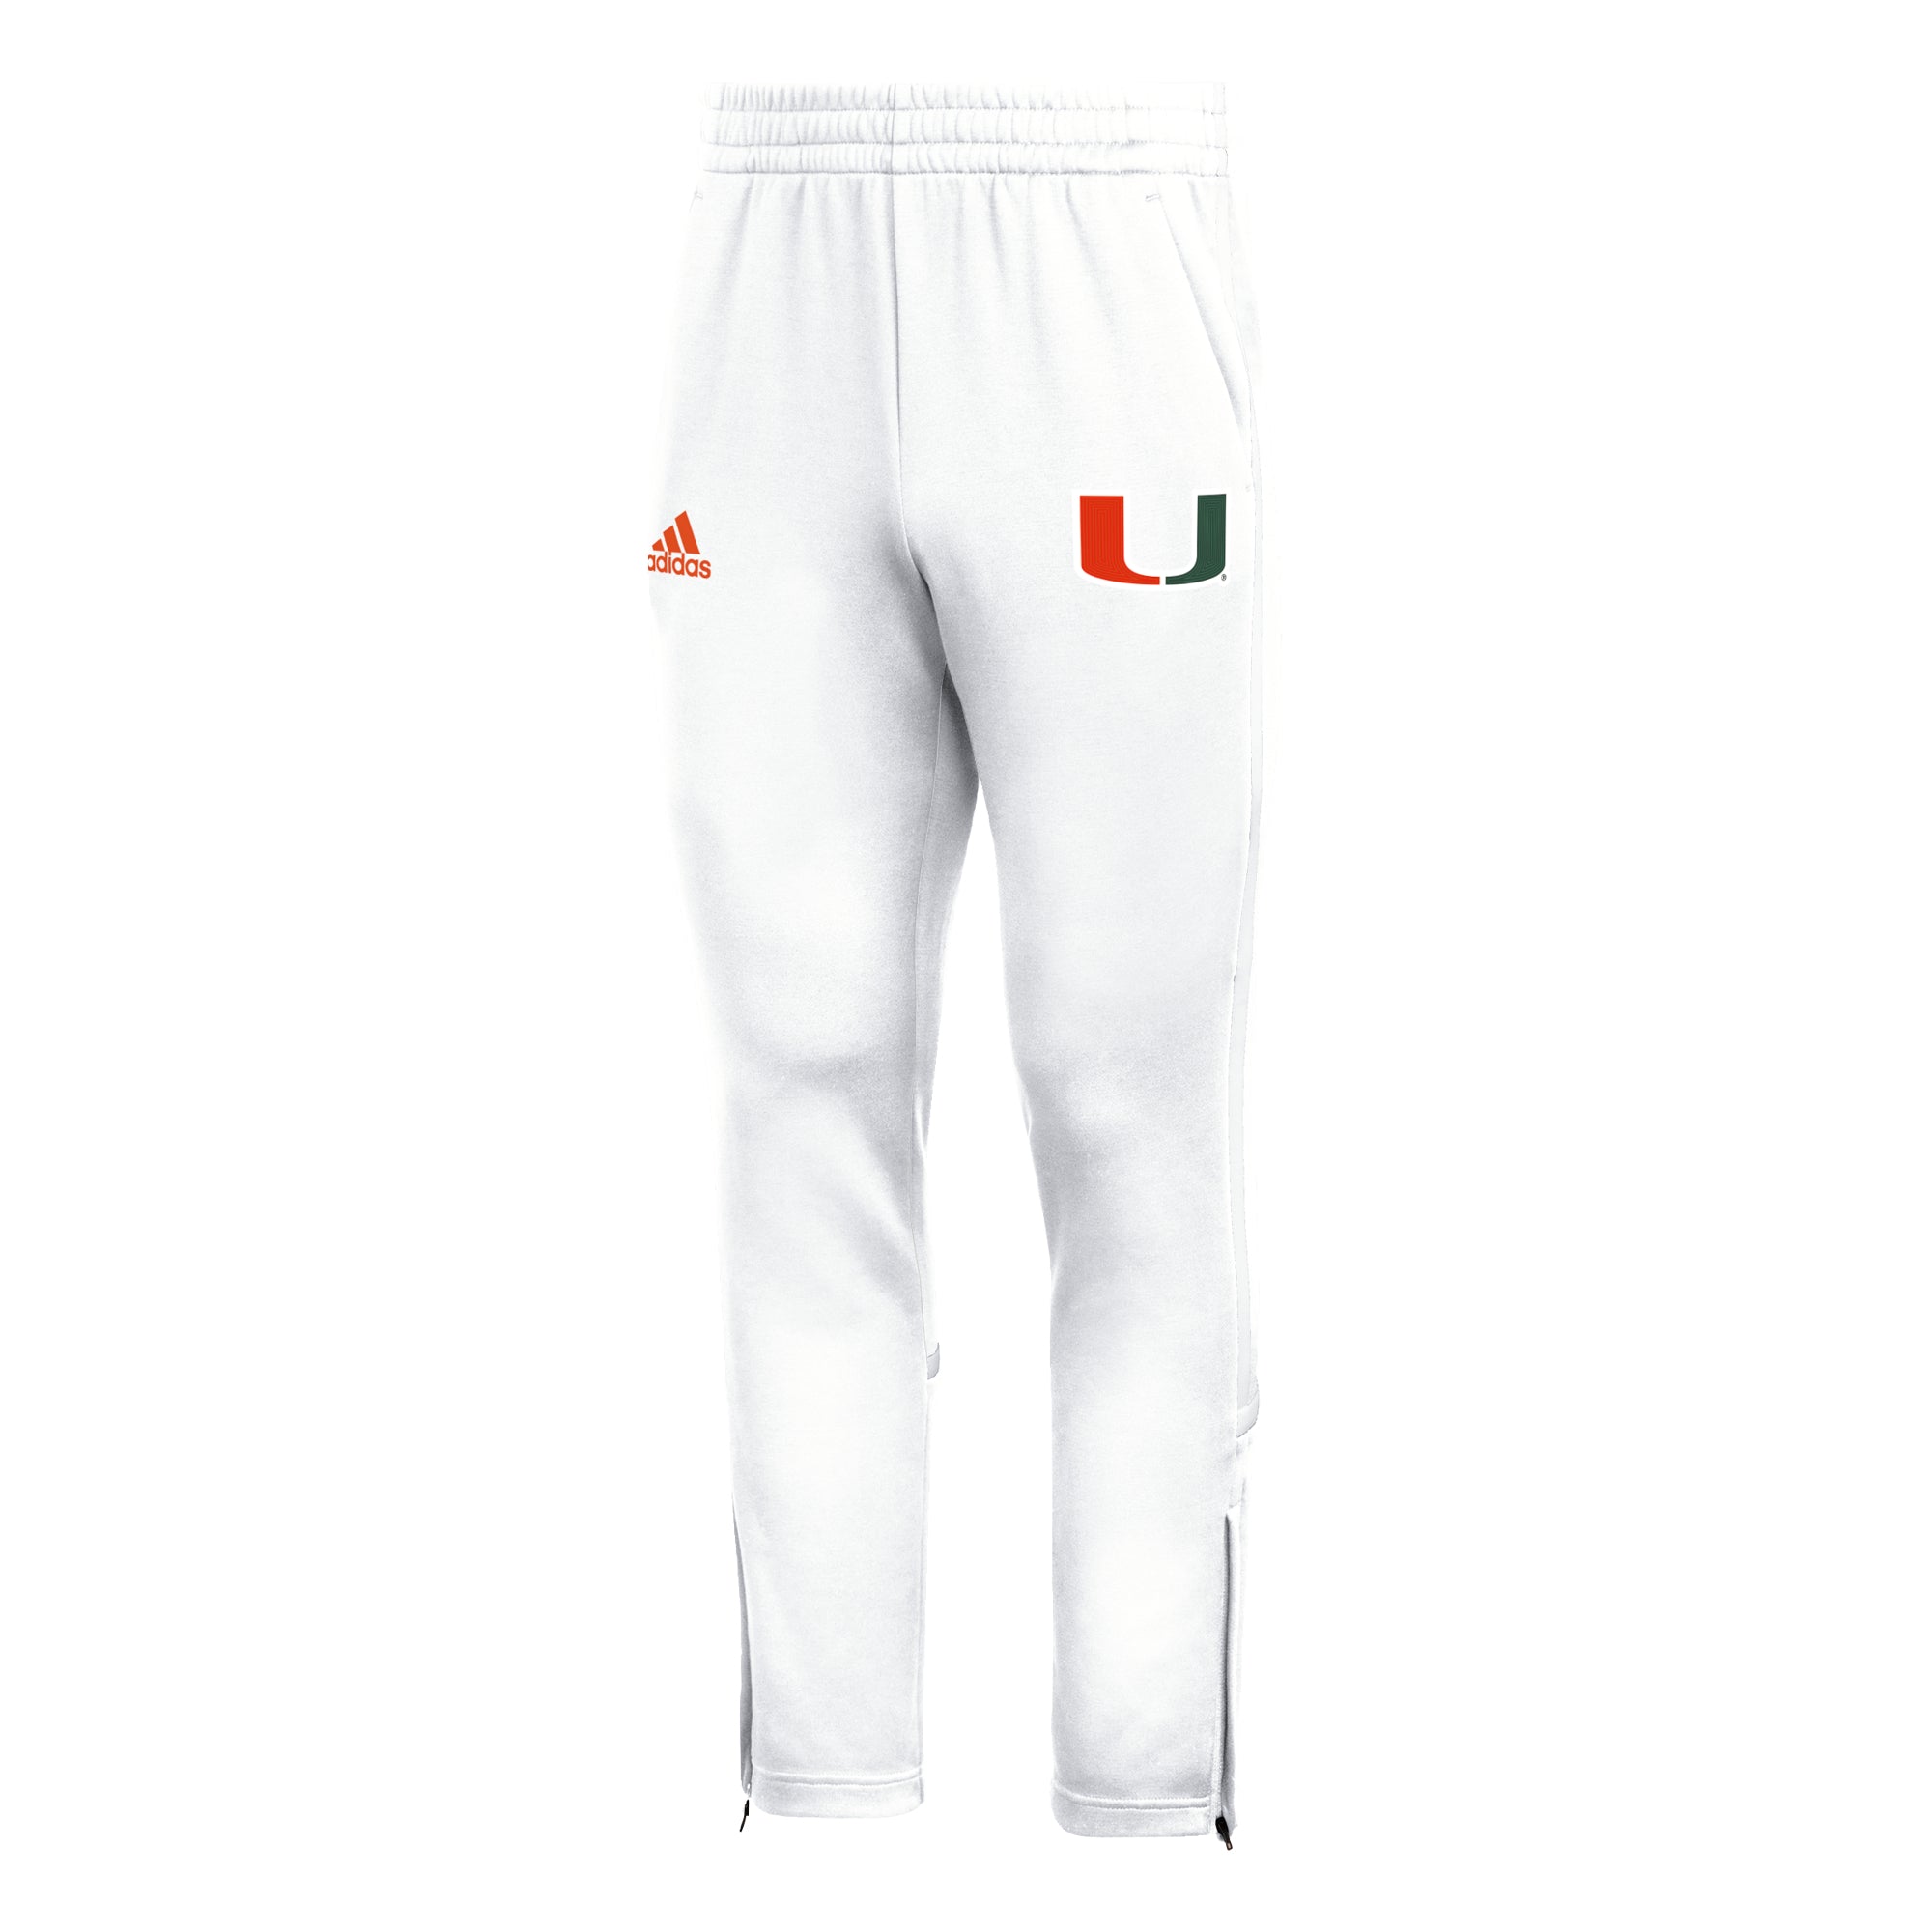 Miami Hurricanes adidas PrimeBlue Warm Up Pant - White